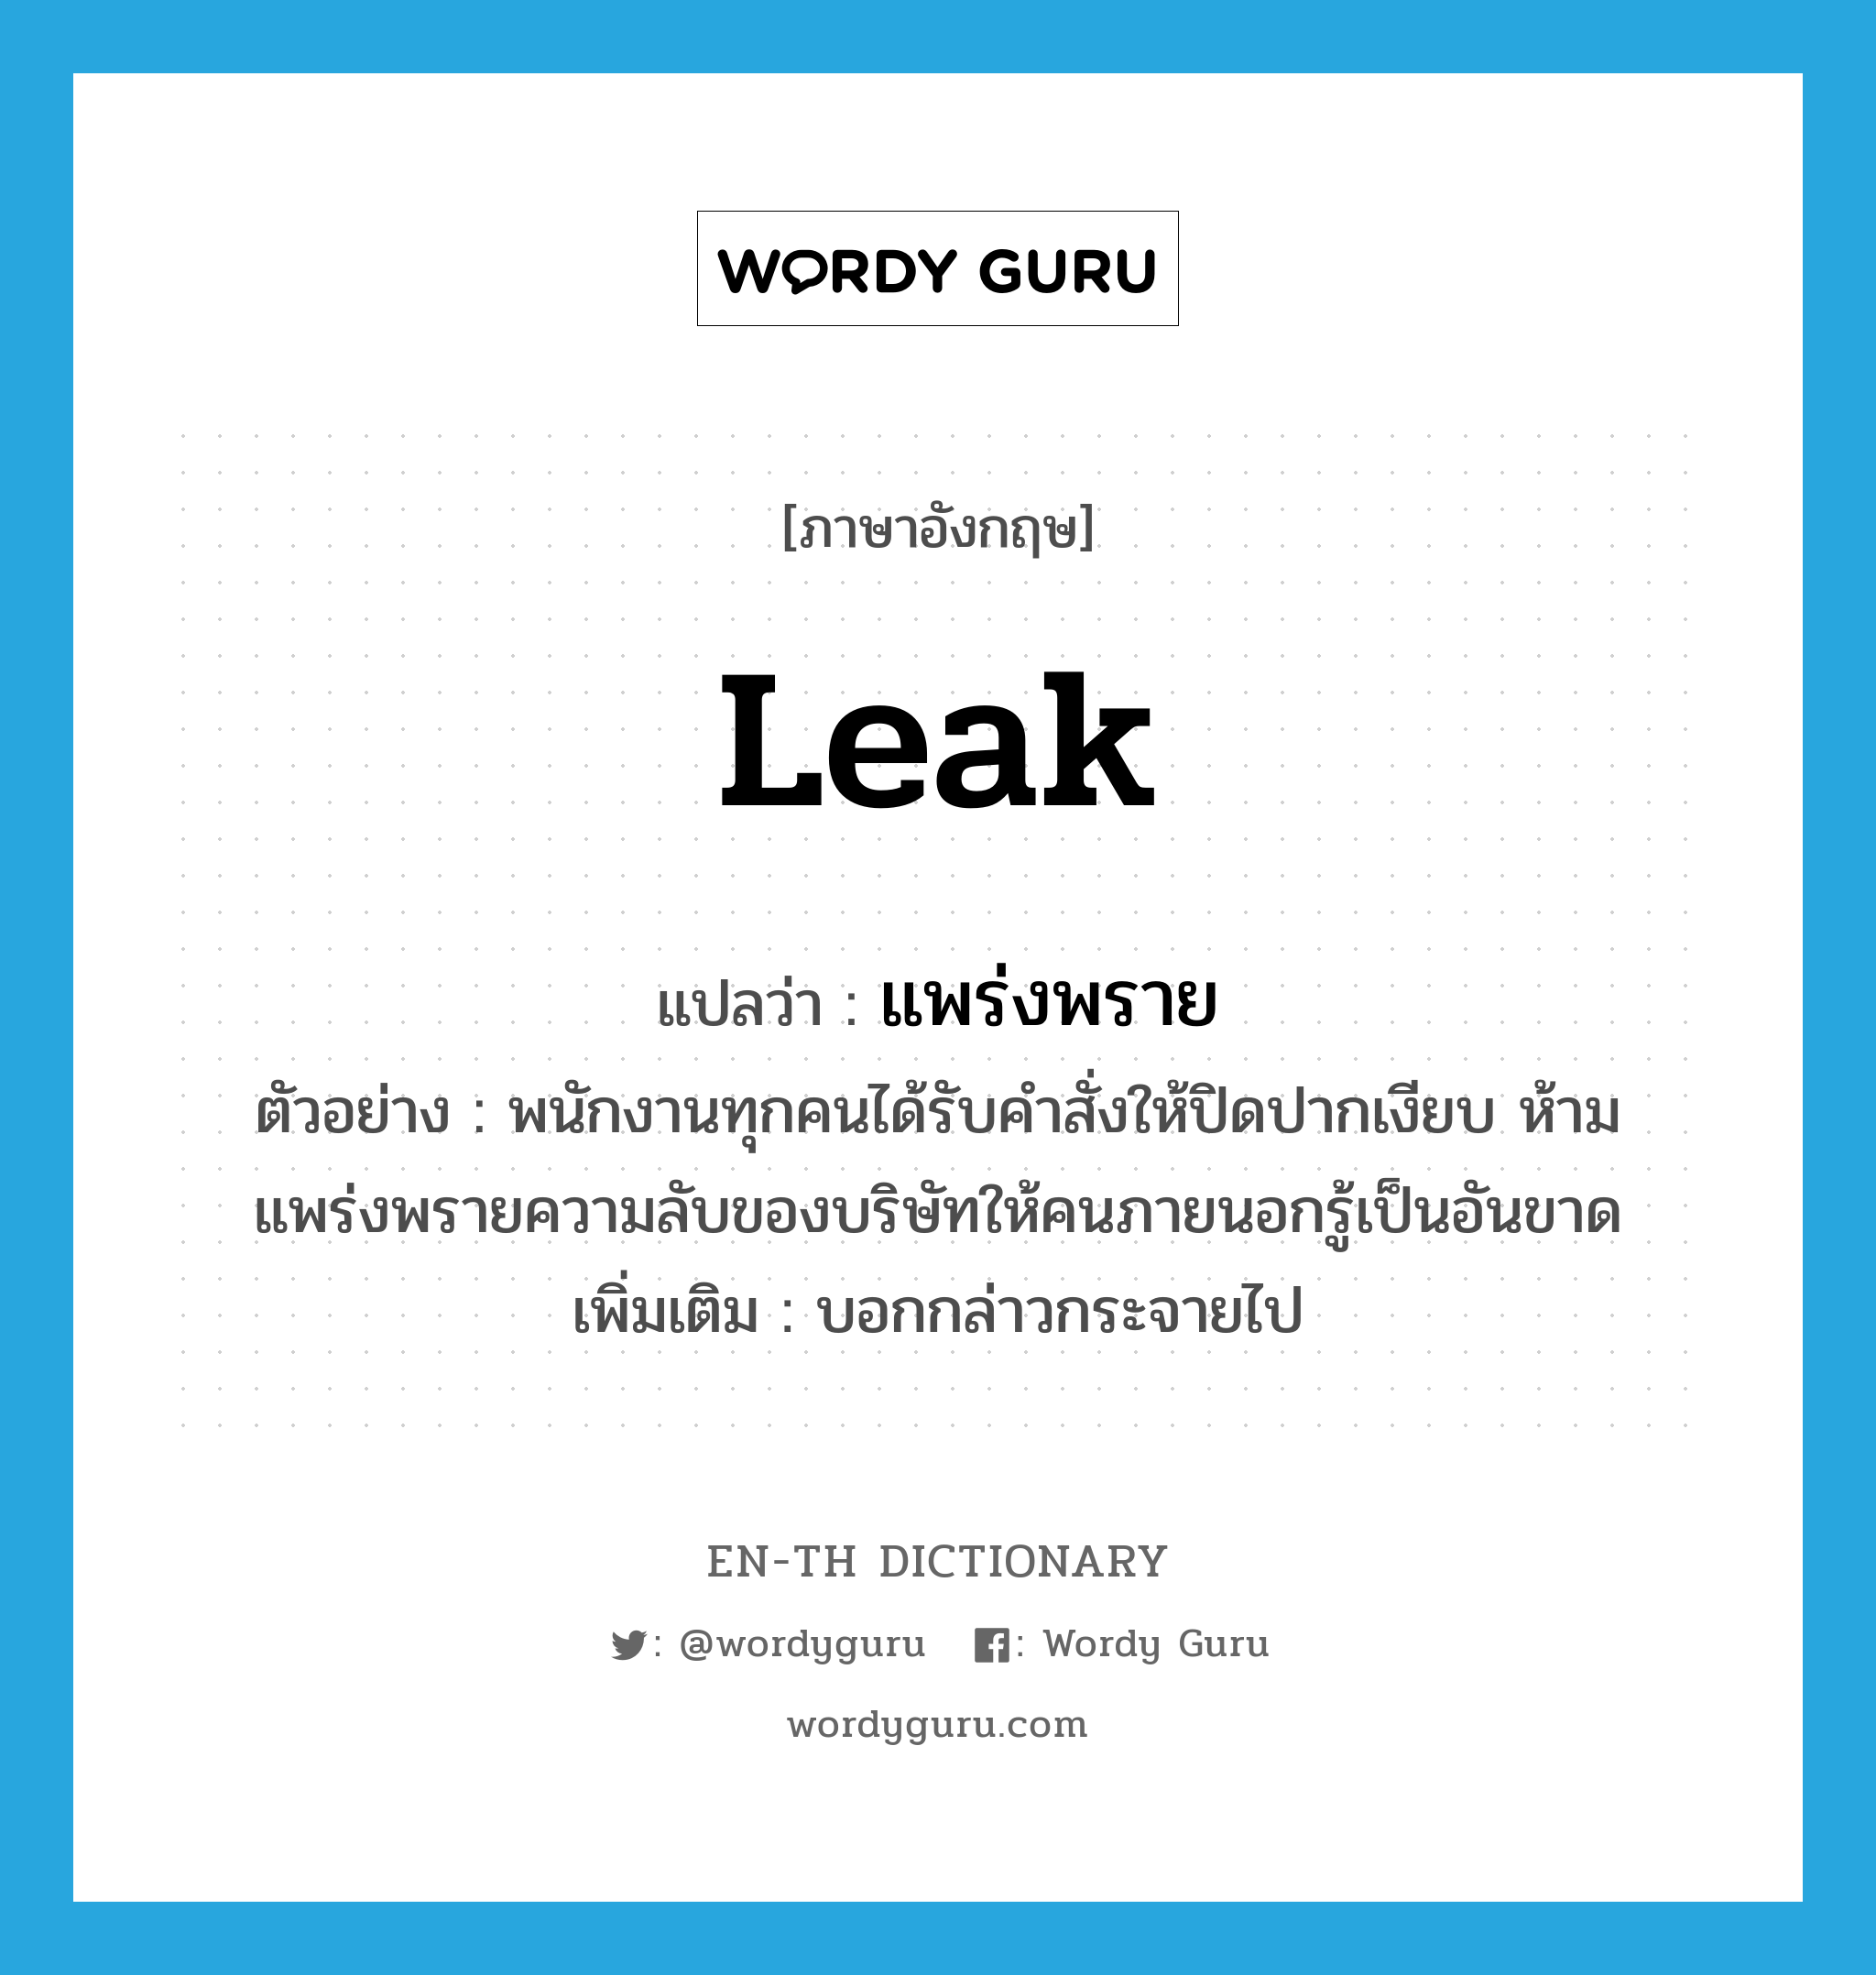 leak แปลว่า?, คำศัพท์ภาษาอังกฤษ leak แปลว่า แพร่งพราย ประเภท V ตัวอย่าง พนักงานทุกคนได้รับคำสั่งให้ปิดปากเงียบ ห้ามแพร่งพรายความลับของบริษัทให้คนภายนอกรู้เป็นอันขาด เพิ่มเติม บอกกล่าวกระจายไป หมวด V